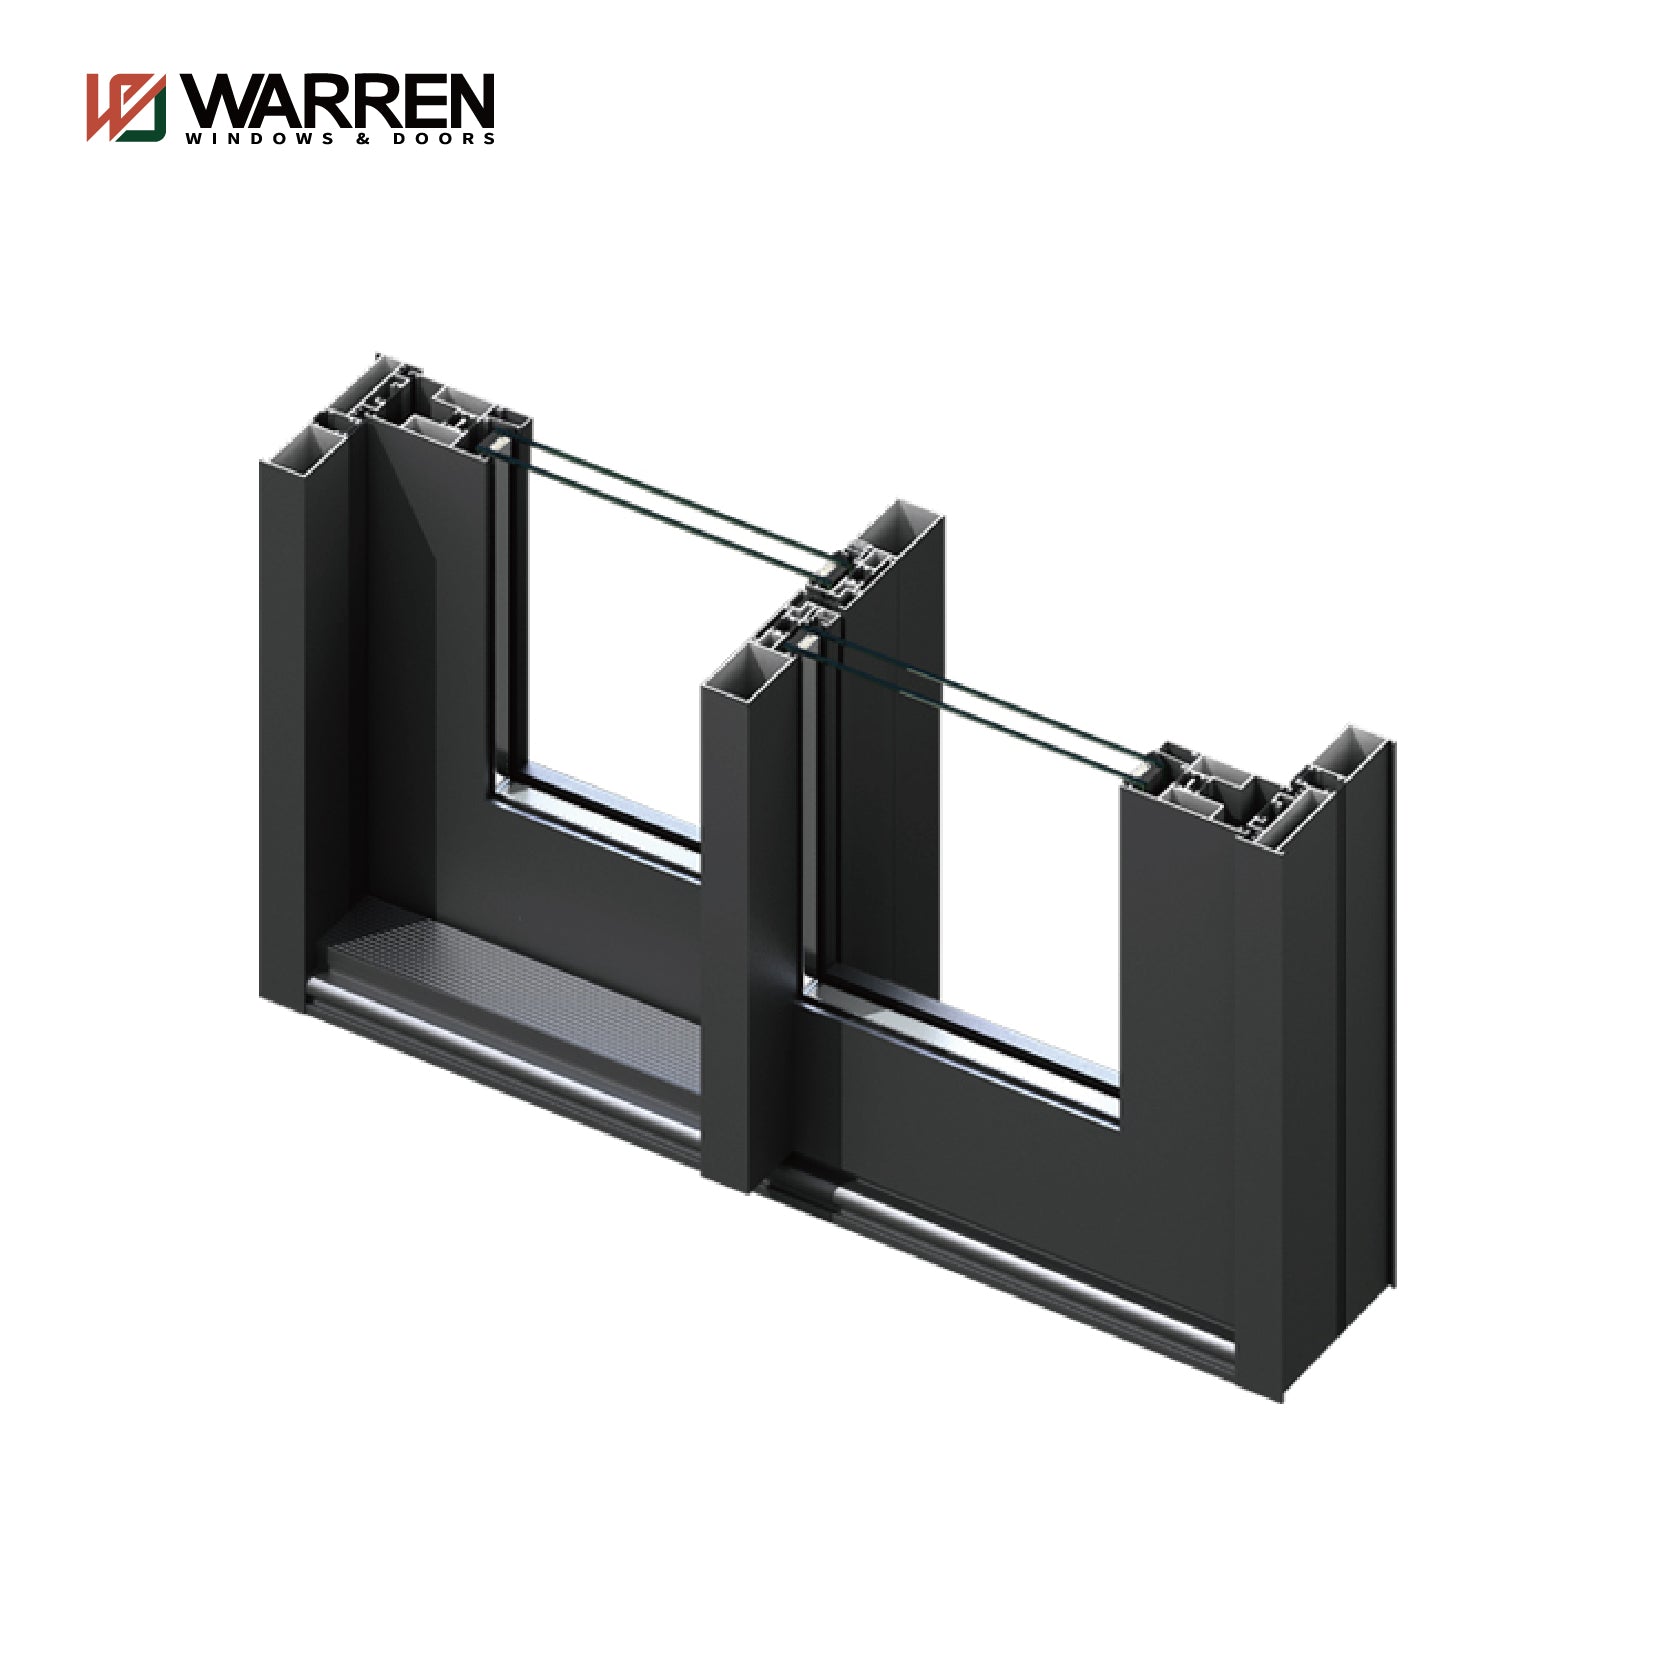 Warren High Quality Factory Sale Slide Door Double Glass Stacking Aluminum Sliding Door System